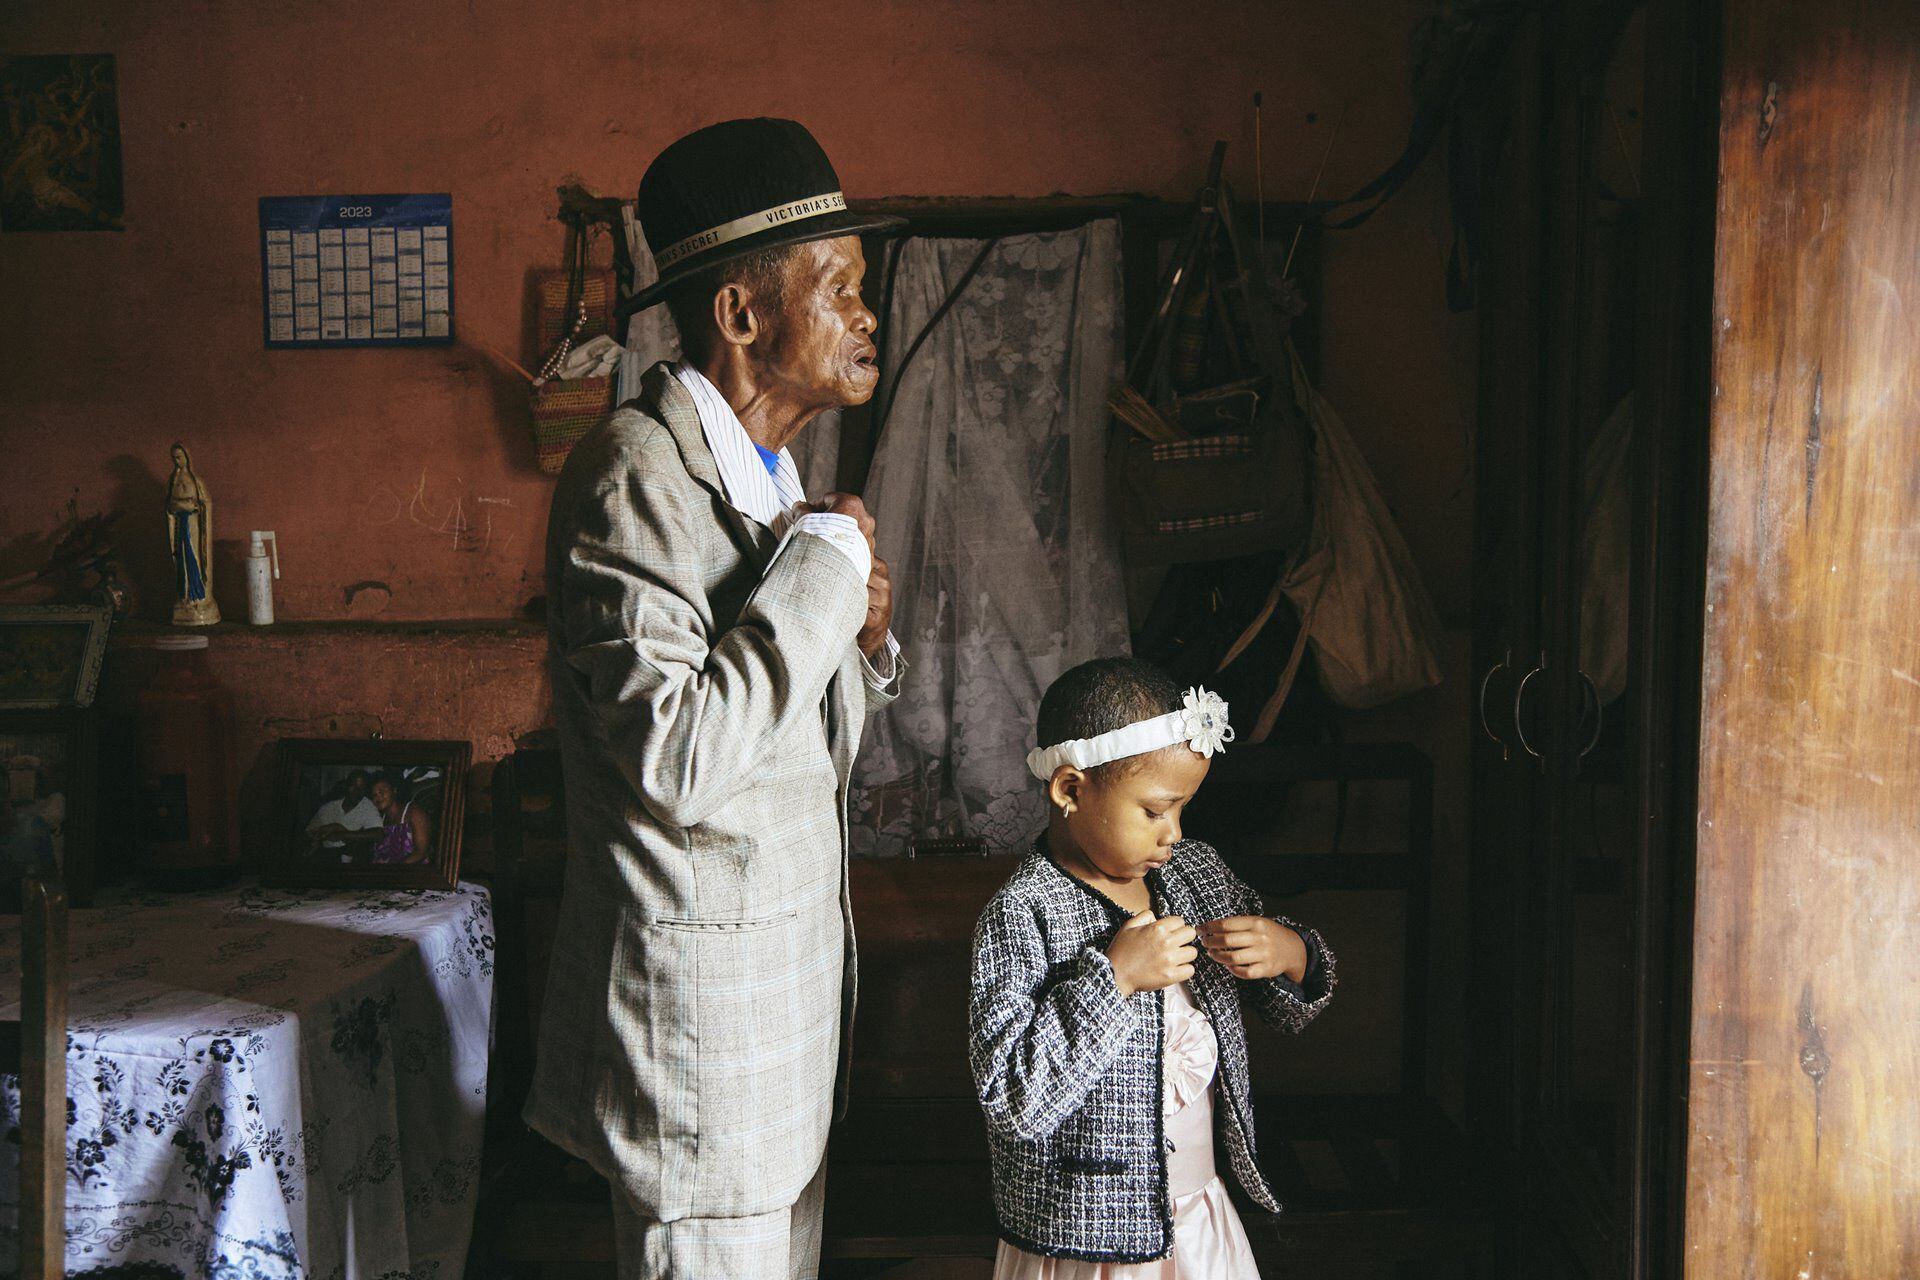 La fotógrafa de GEO, Lee-Ann Olwage, de Sudáfrica ganó la categoría de historia del año con imágenes que documentan la demencia en Madagascar. Hoto: Lee-Ann Olwage